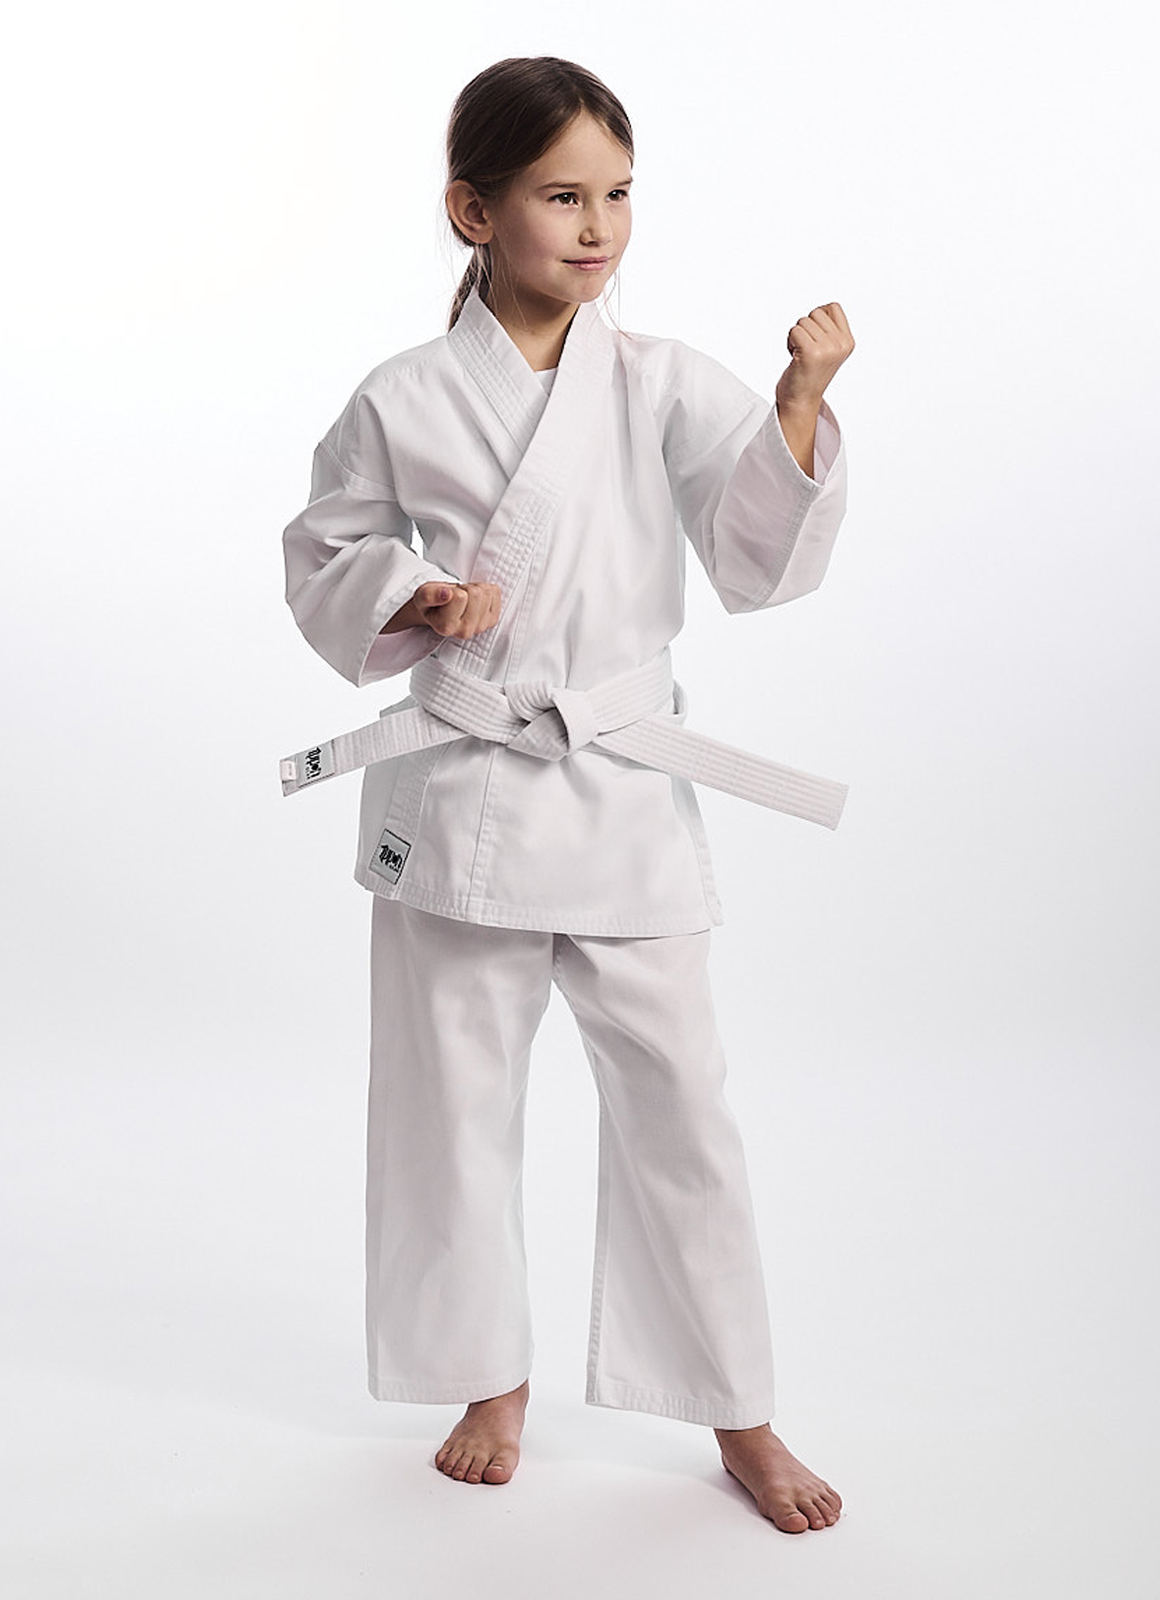 Blanc densité de Tissu Ippon Gear Club Kimono de karaté pour débutant avec Ceinture Lacets I 220 g/m² 8 oz 